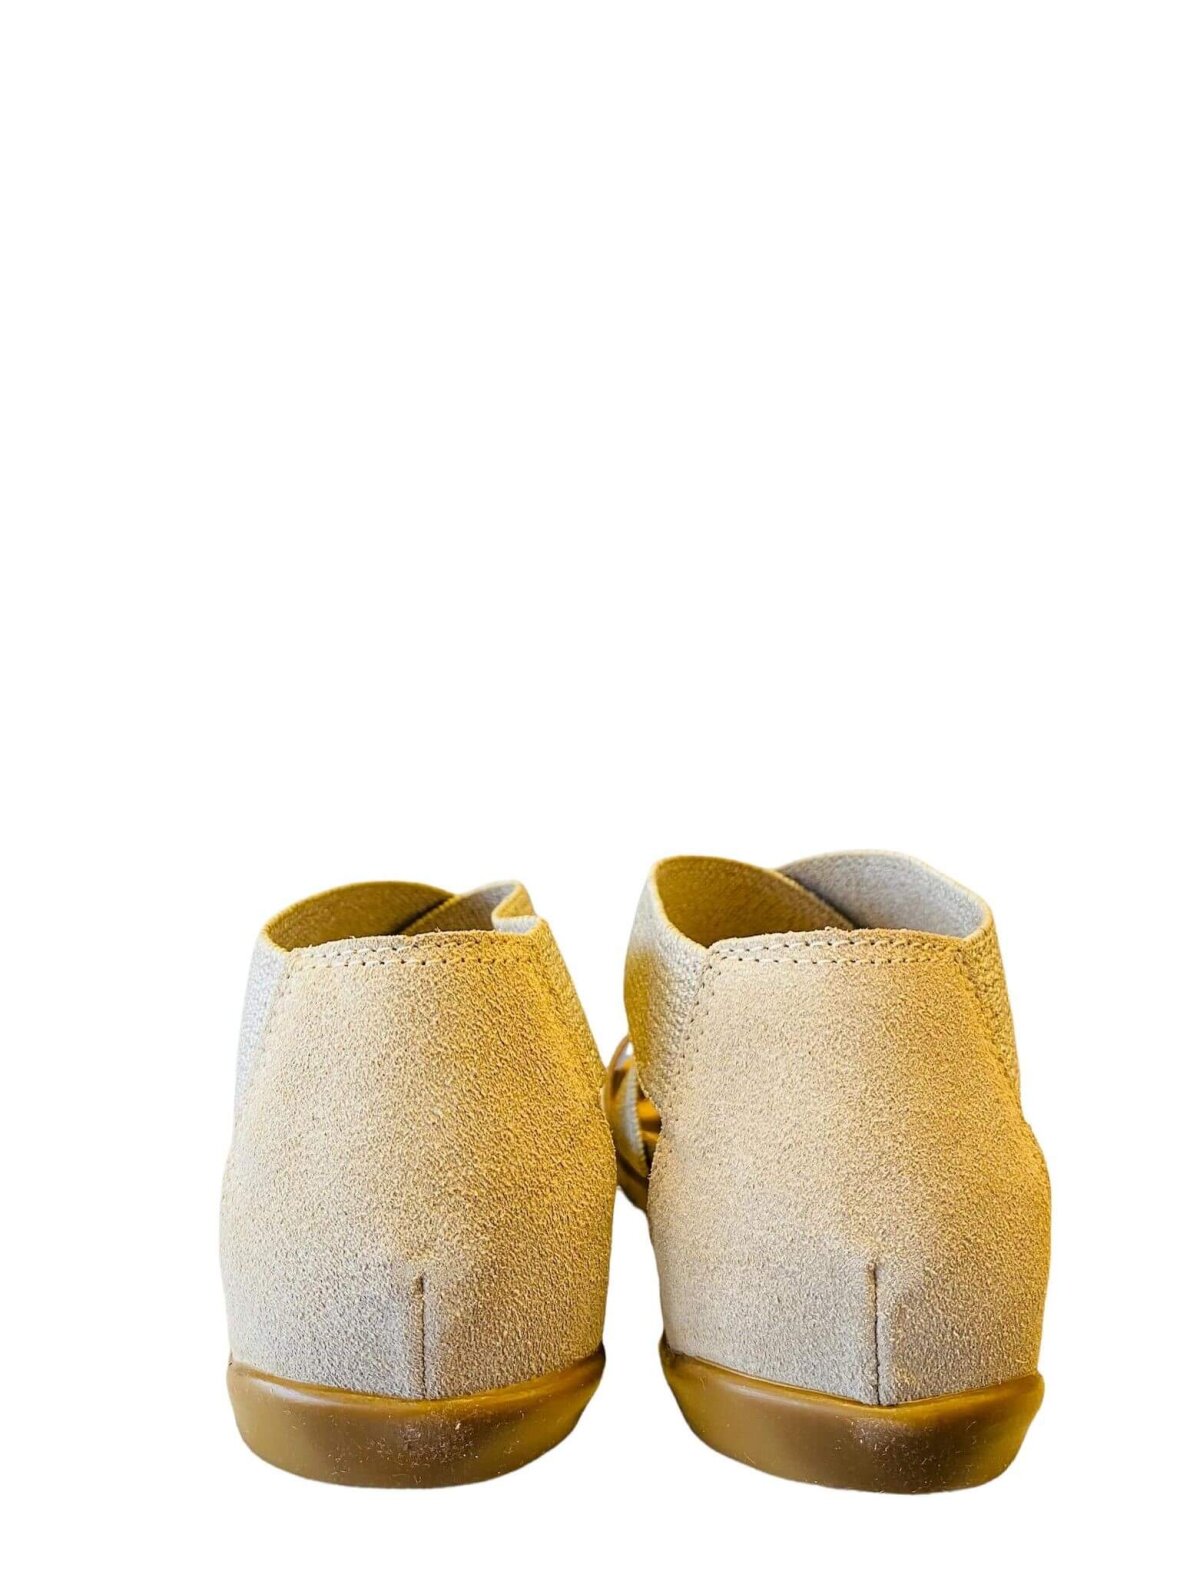 Køb sandal BioNatura beige ruskind hos Helle M i Vejle.